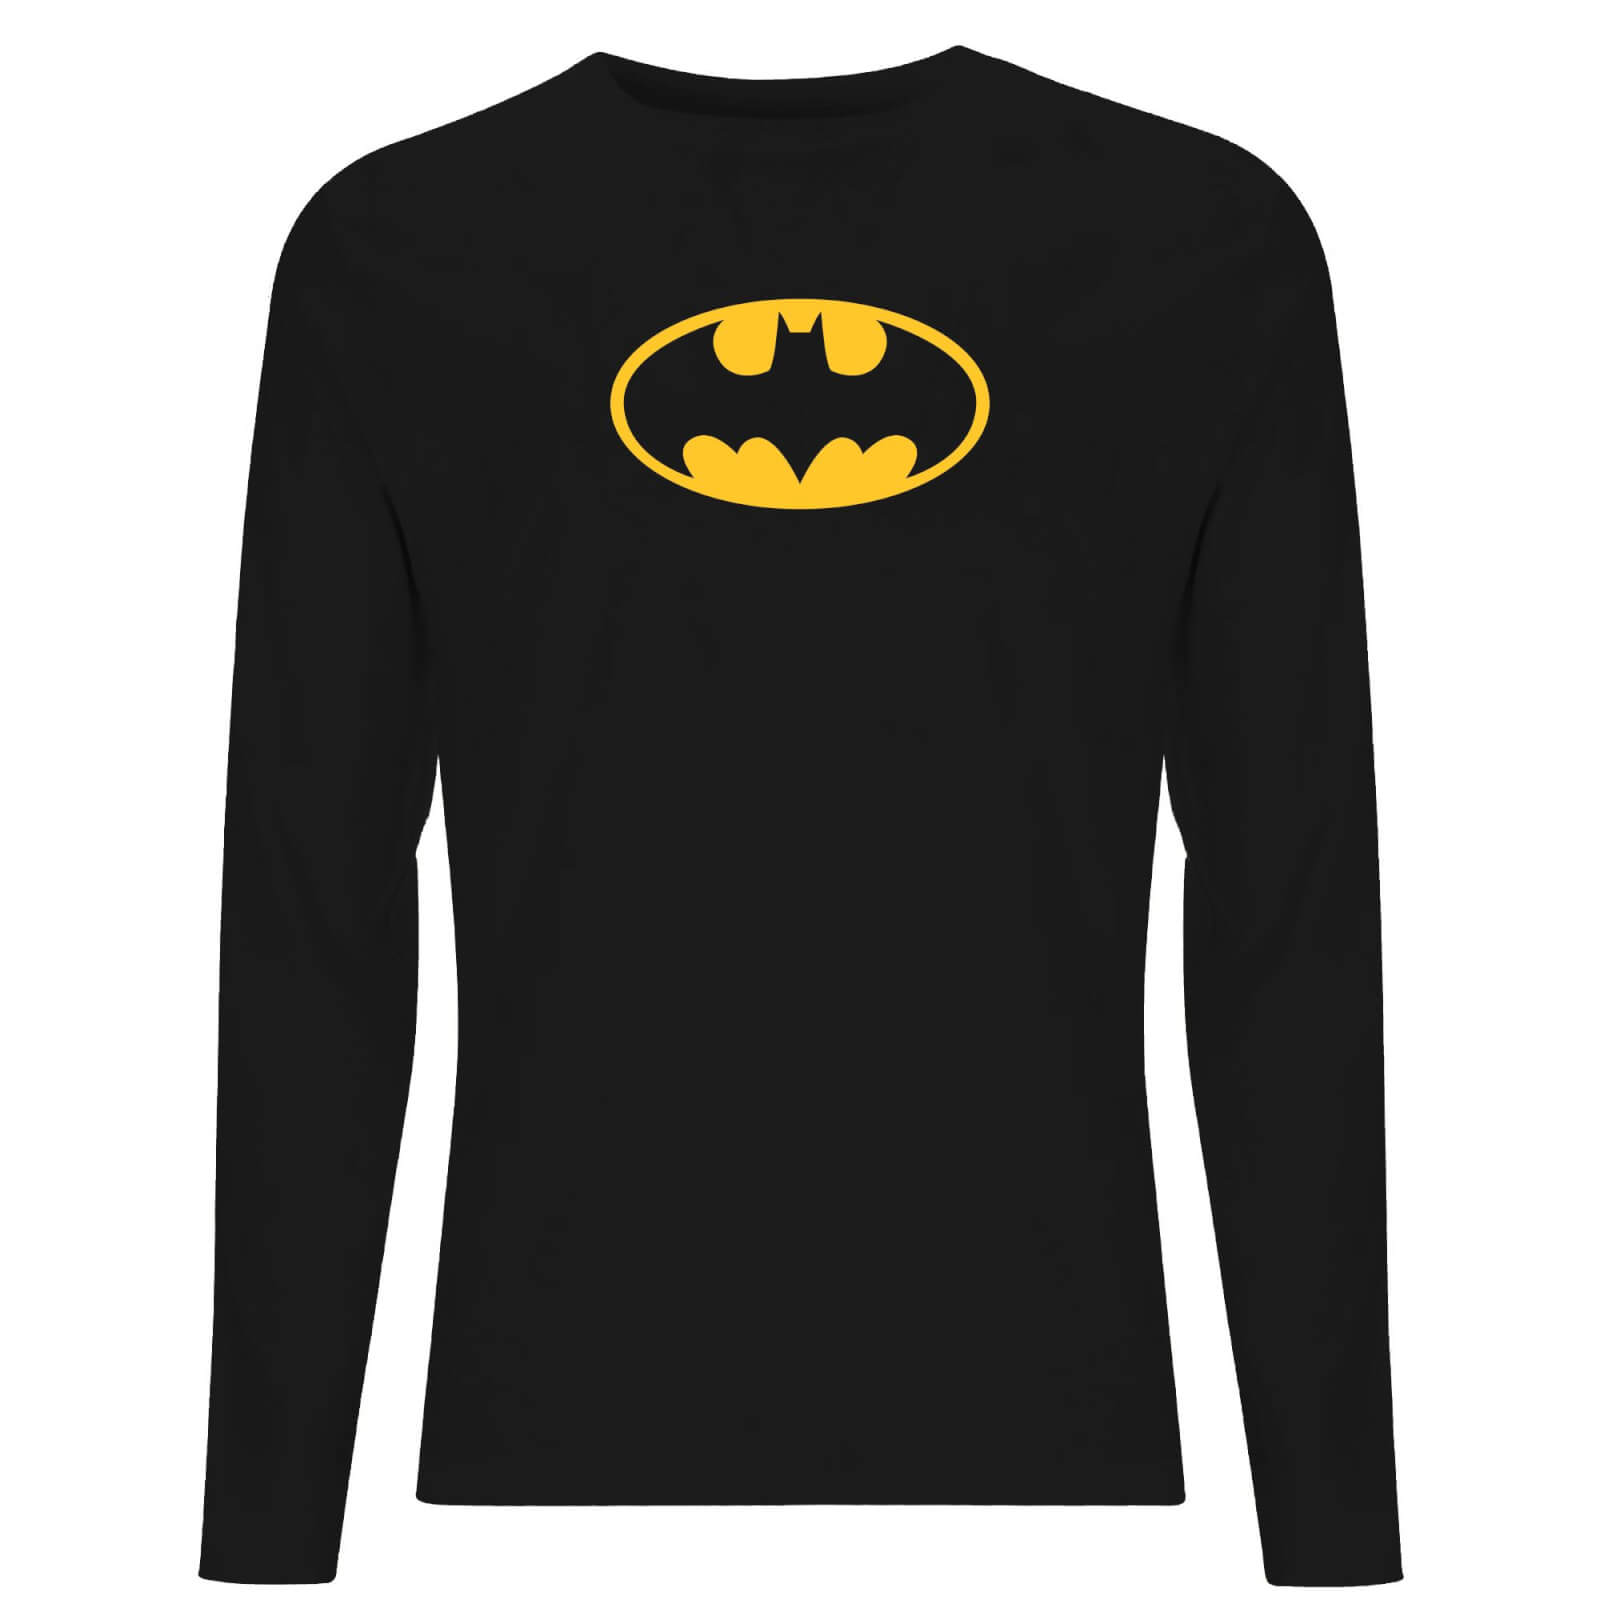 Image of DC Justice League Core Batman Logo Unisex Long Sleeve T-Shirt - Black - L - Schwarz